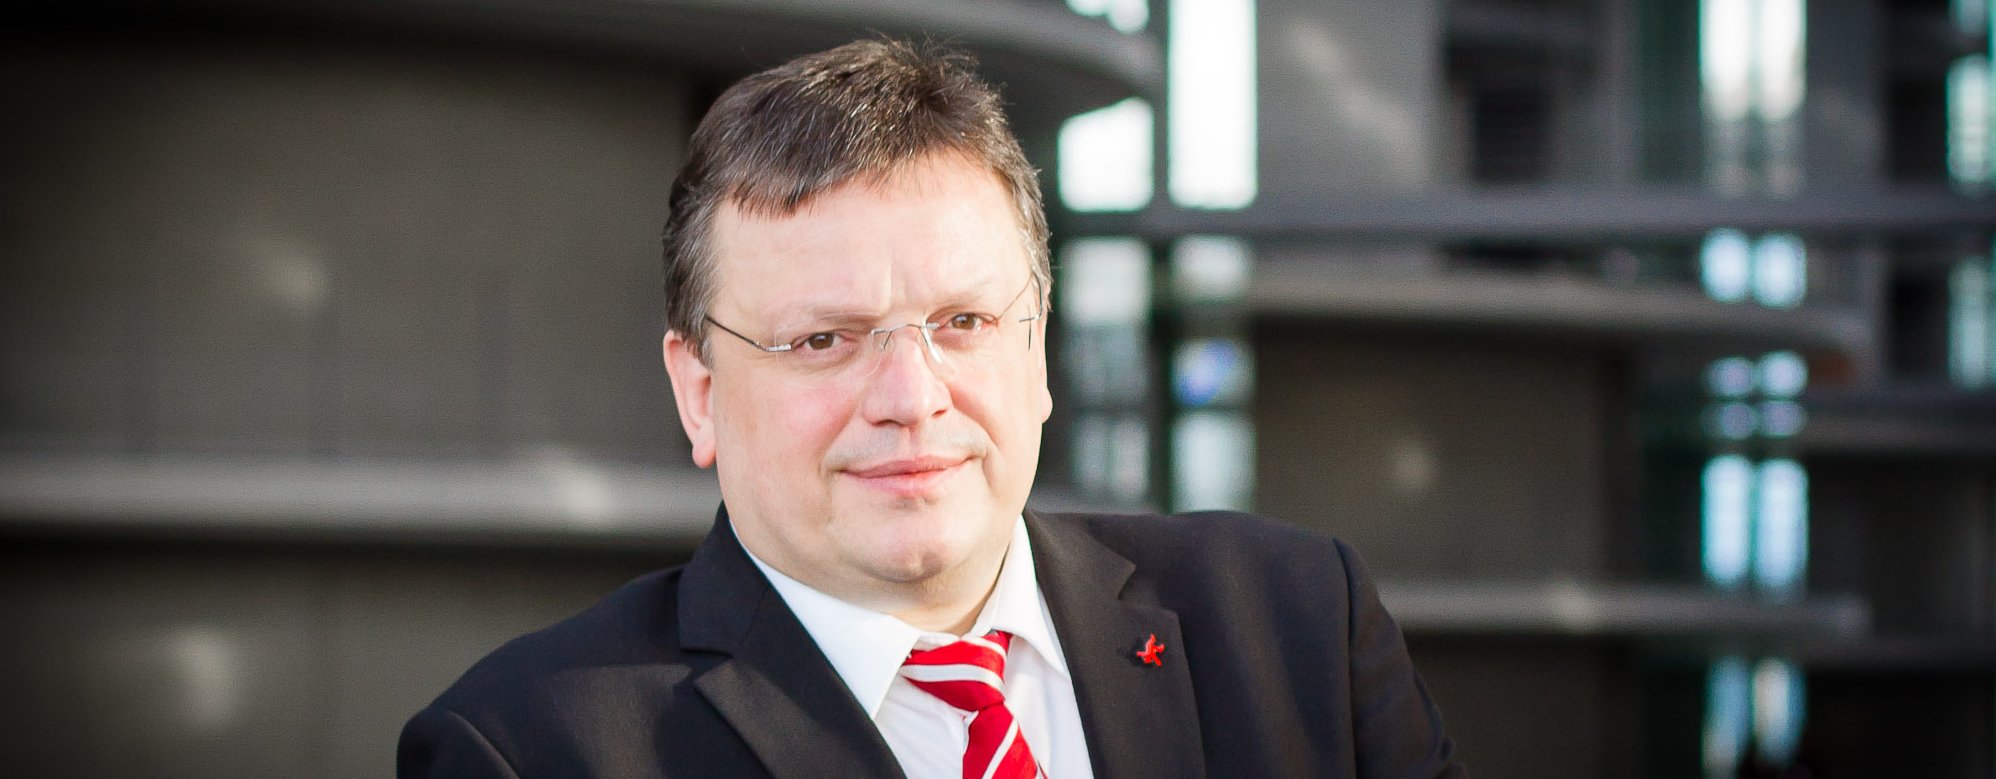 Der SPD-Bundestagsabgeordnete Andreas Rimkus zur Zustimmung zum Asylverfahrensbeschleunigungsgesetz